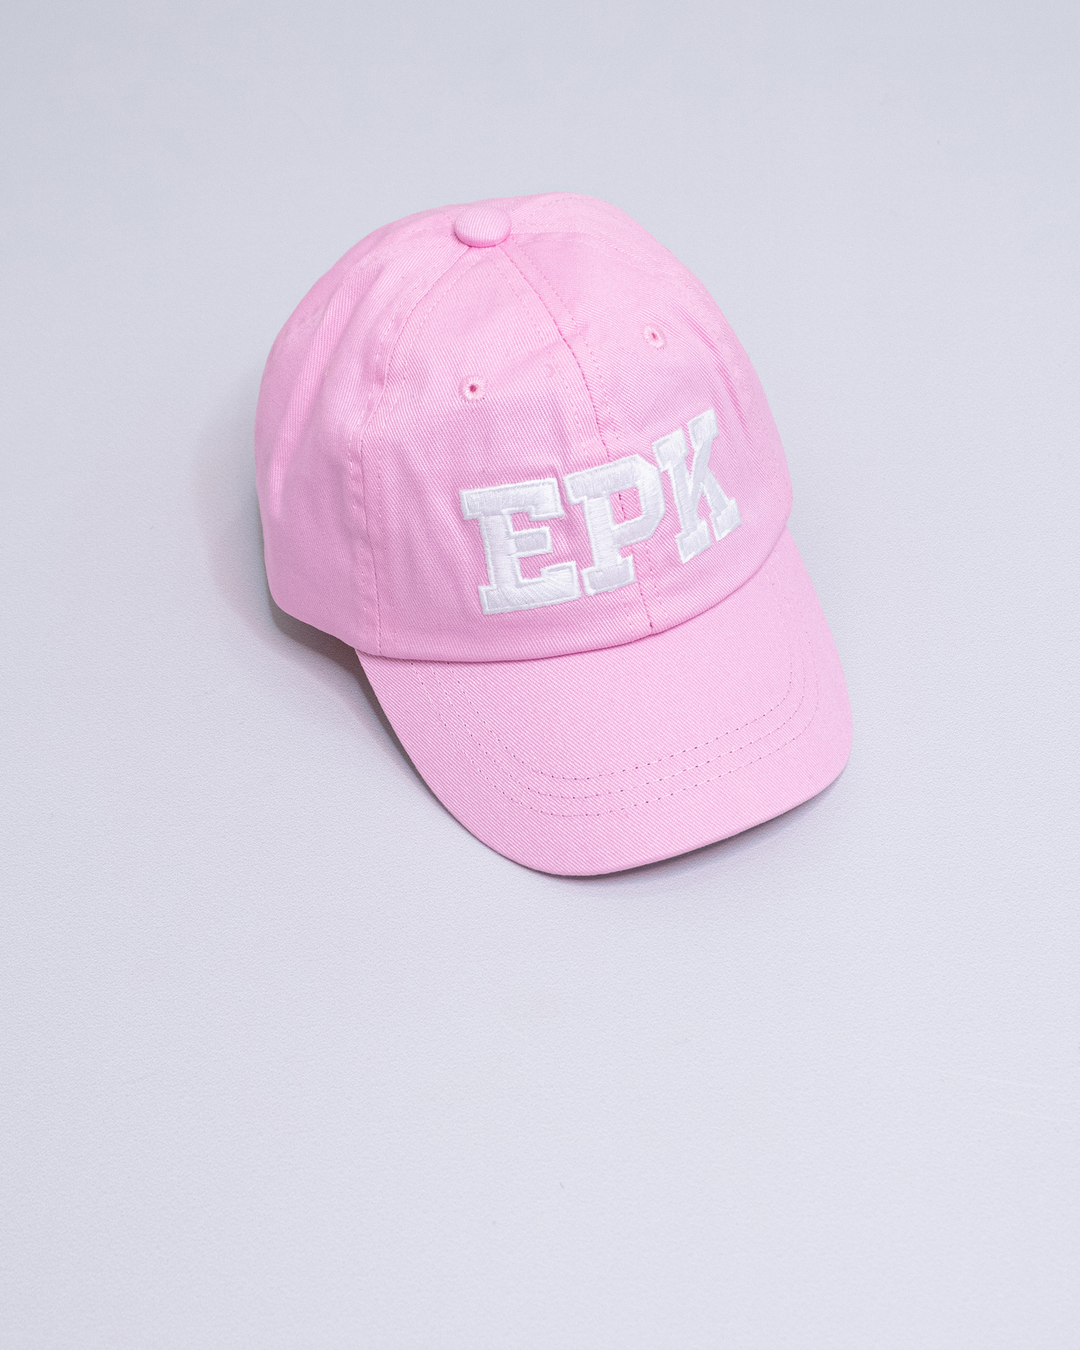 Gorra rosada con el logo EPK